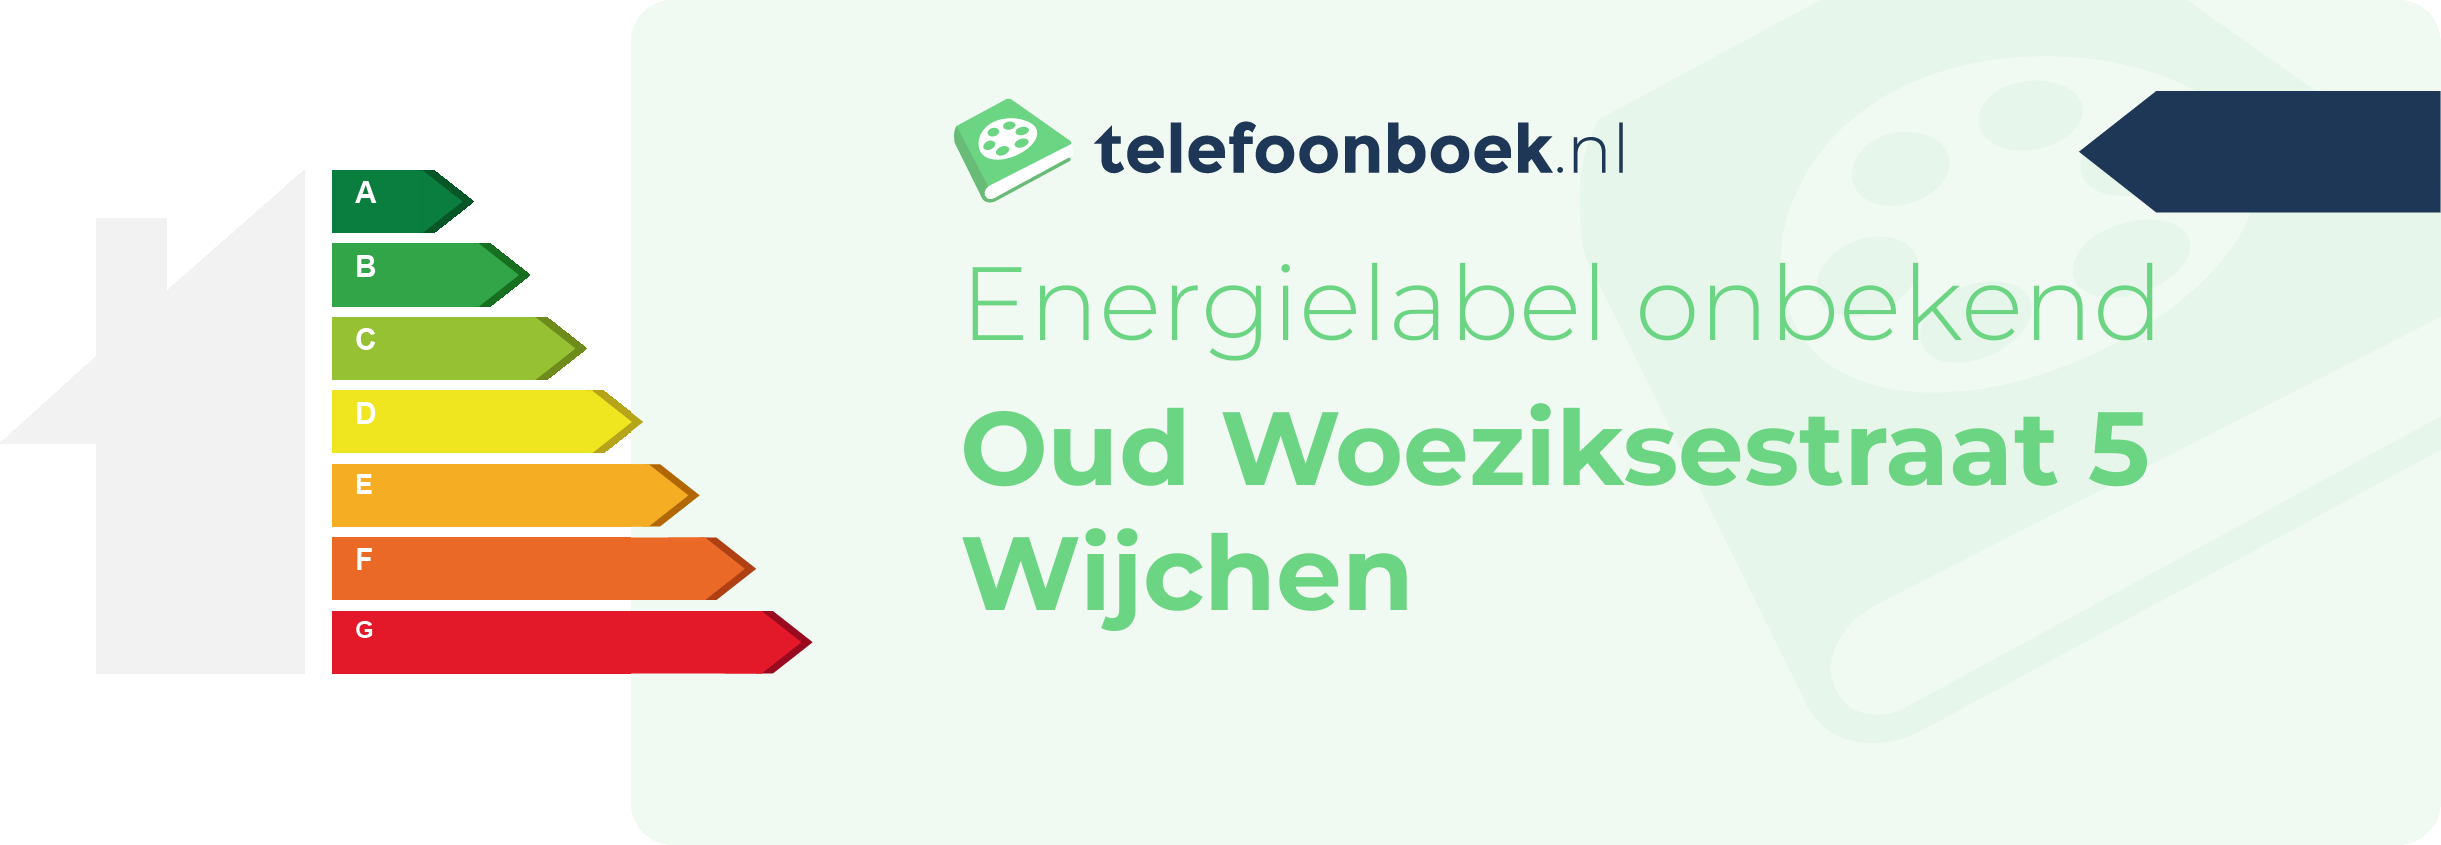 Energielabel Oud Woeziksestraat 5 Wijchen